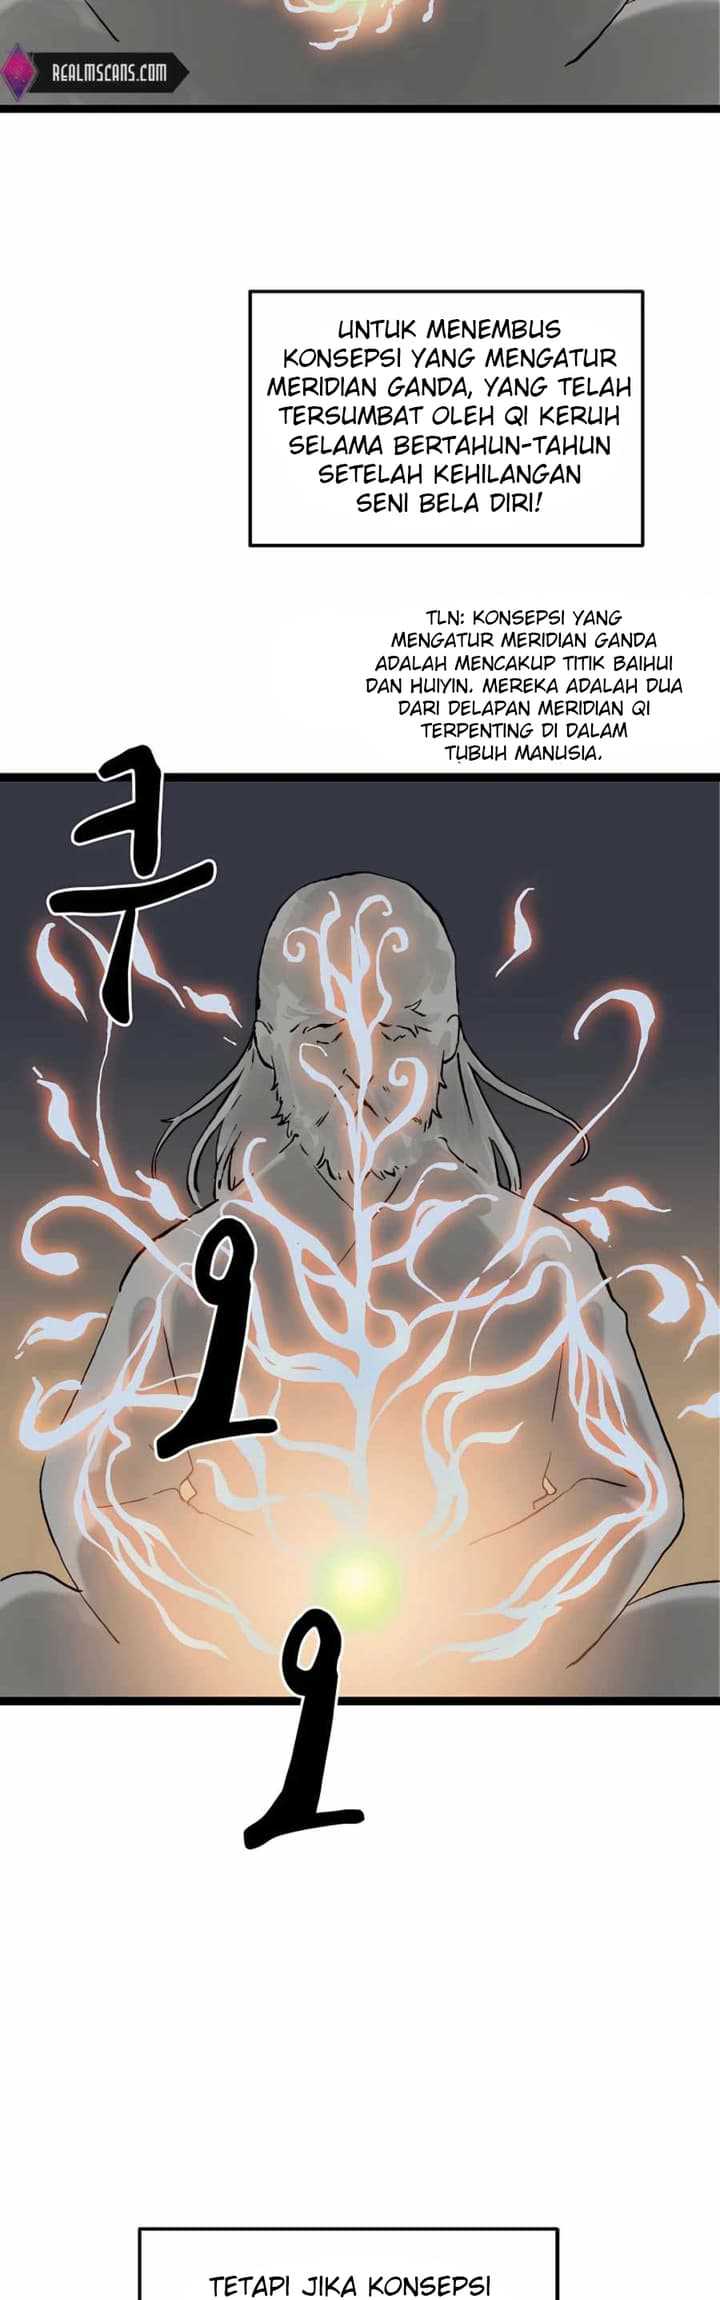 Demonic Master of Mount Kunlun Chapter 19